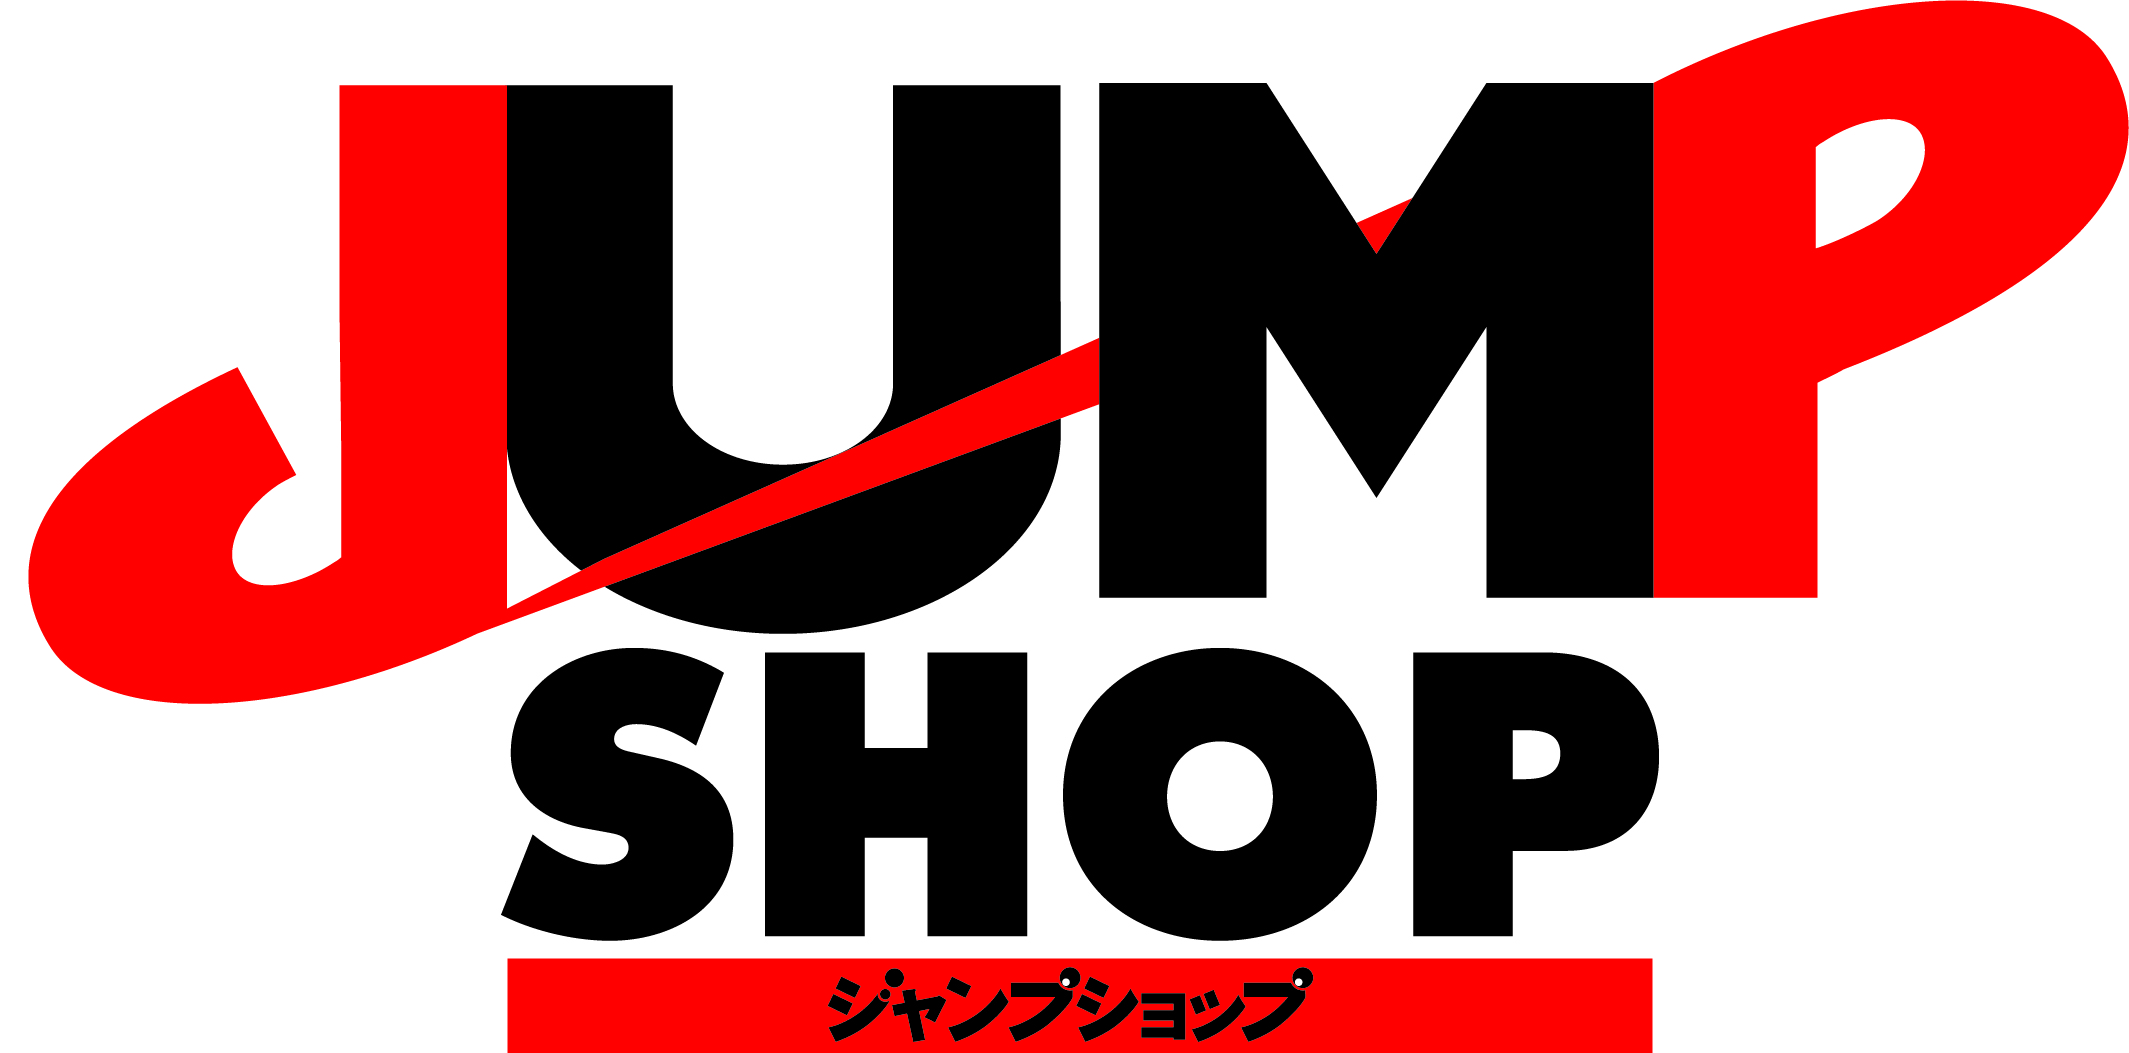 9月日 日 期間限定 鬼滅の刃 グッズショップin Jump Shop東京 アクアシティお台場店のチケット情報 予約 購入 販売 ライヴポケット